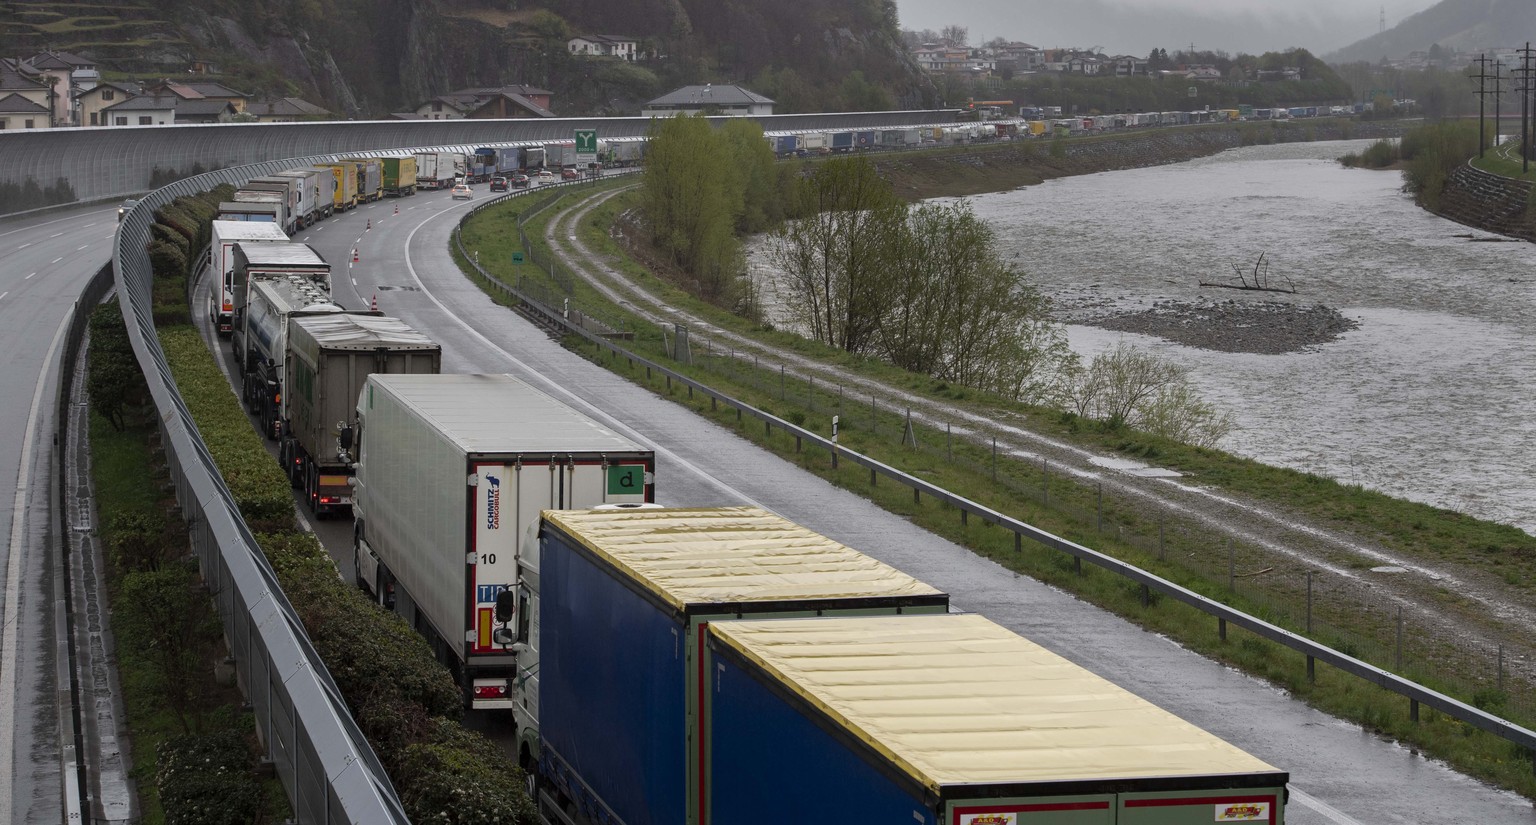 Augrund des schlechten Wetters mit Schnee und Regen staut sich der Verkehr auf der Autobahn A2 bei Bellinzona, am Donnerstag, 4. April 2019. (KEYSTONE/TI-PRESS/Davide Agosta)